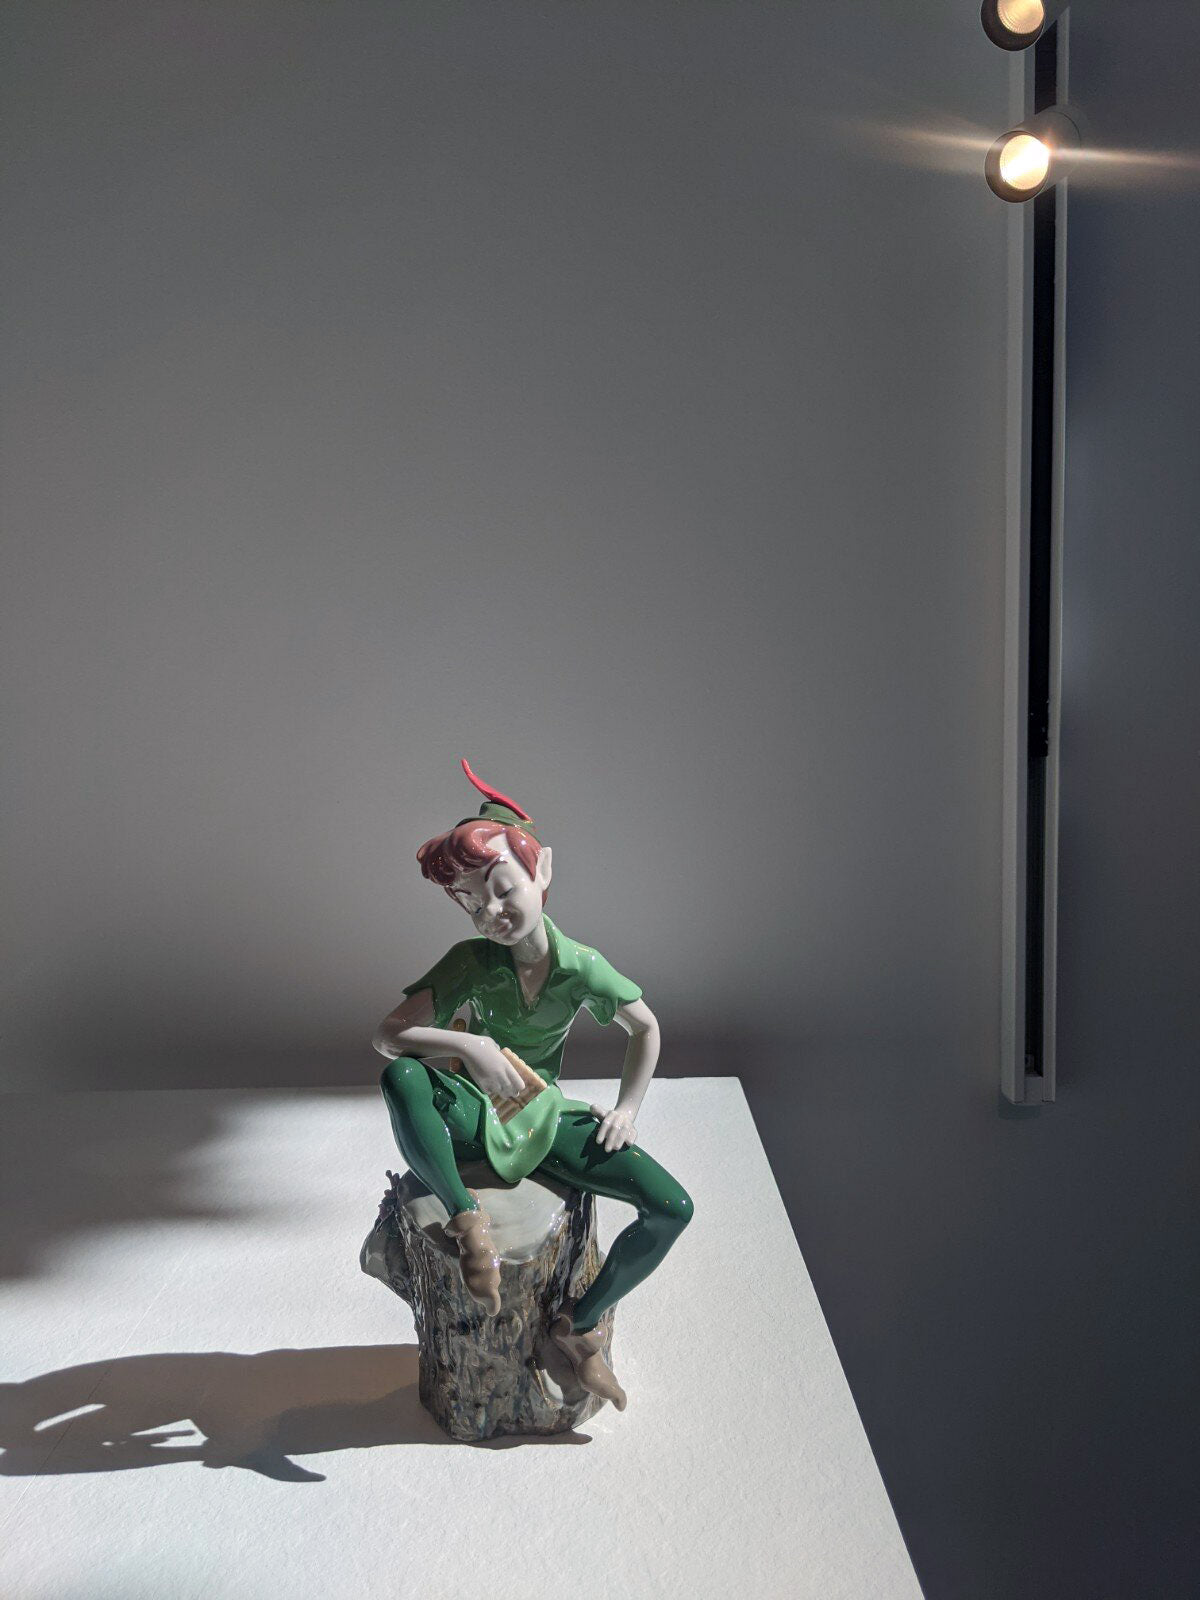 Official Peter Pan Sculpture - FormFluent